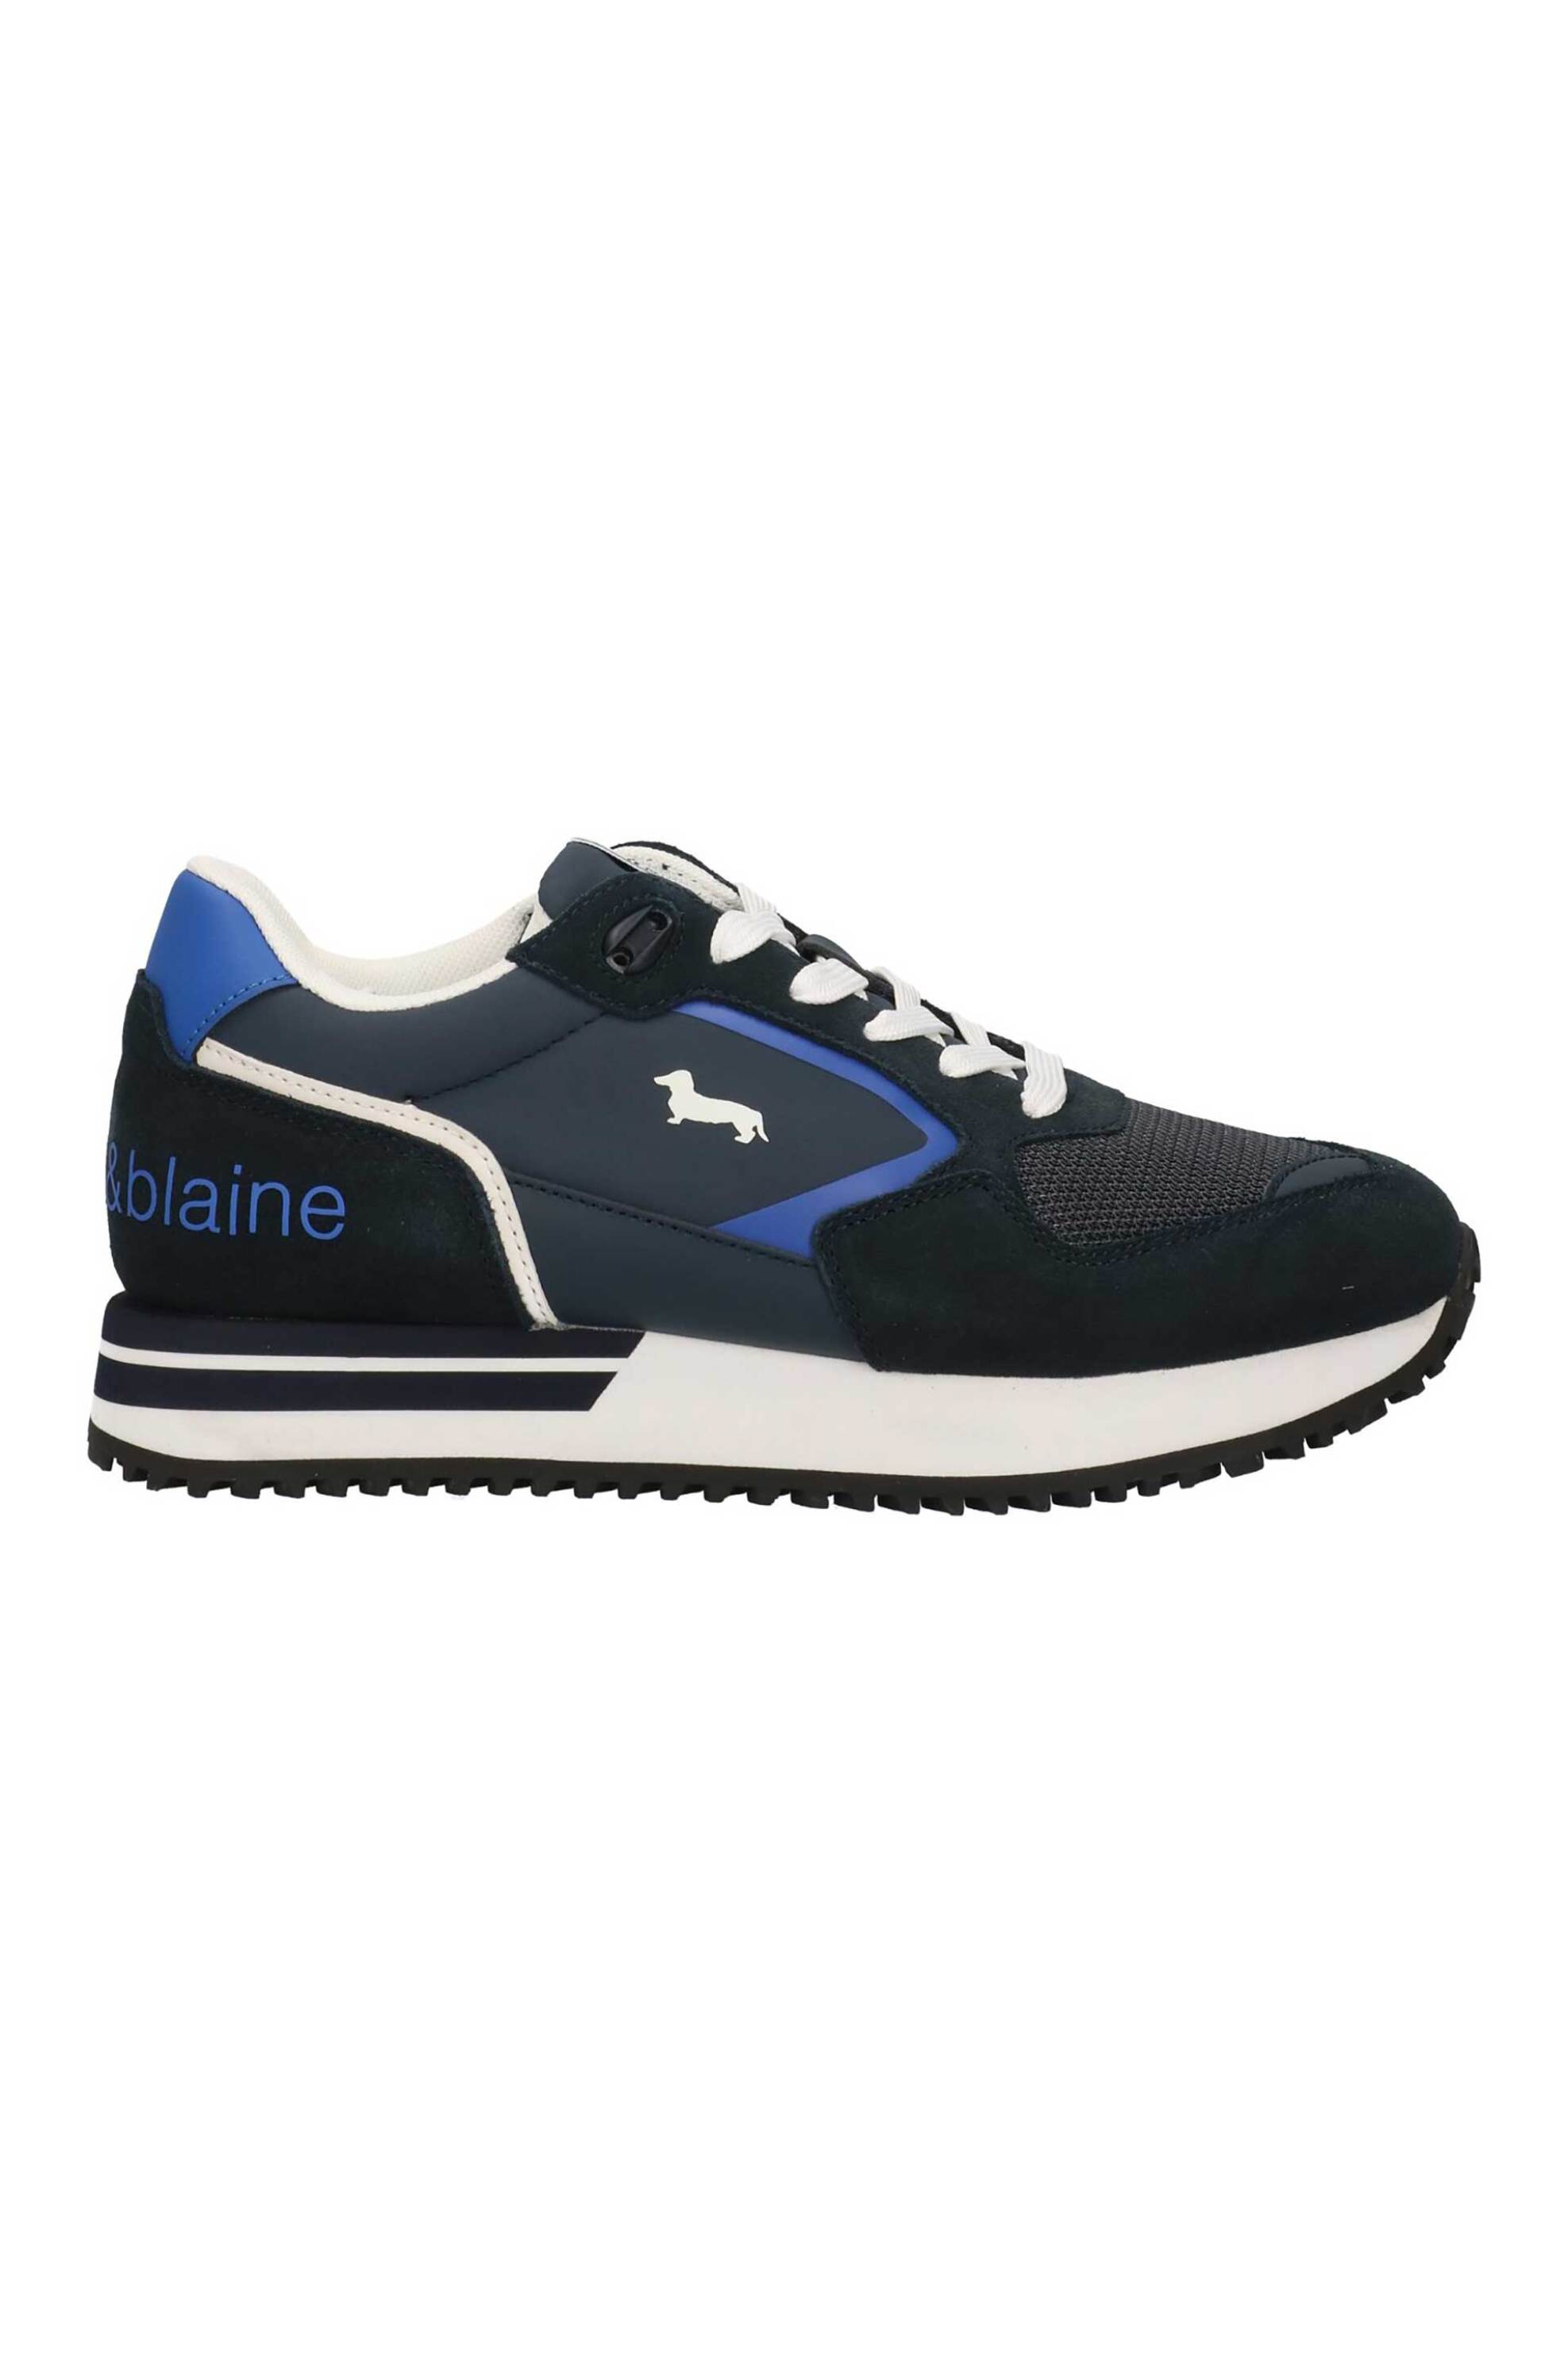 Ανδρική Μόδα > Ανδρικά Παπούτσια > Ανδρικά Sneakers Harmont & Blaine ανδρικά suede sneakers - EFM241050-6200 Μπλε Σκούρο